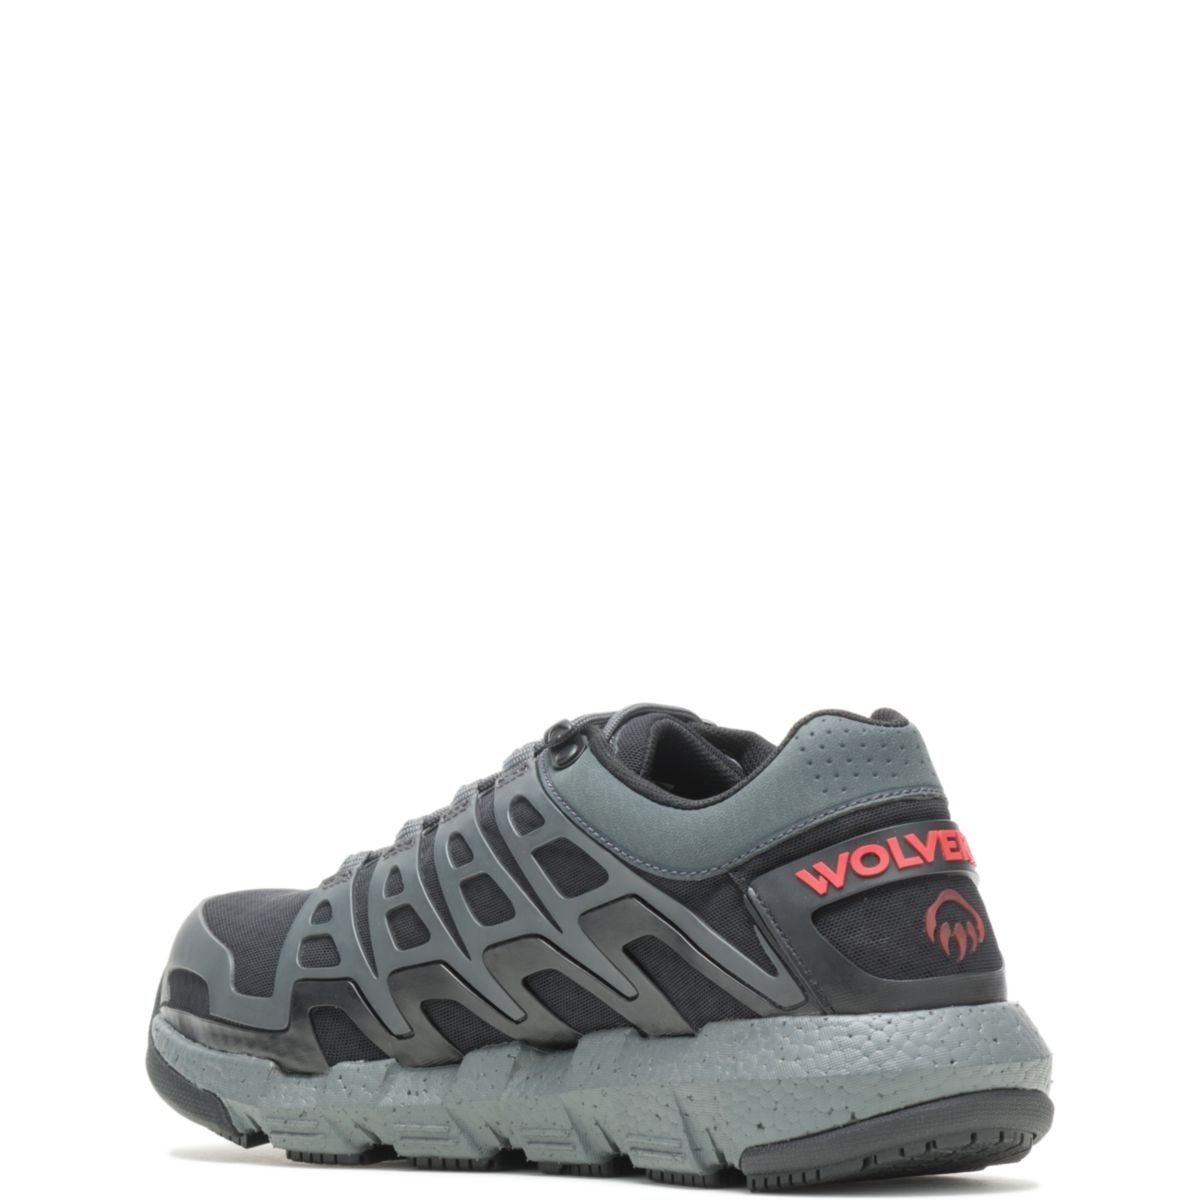 WOLVERINE Men's Rev Vent UltraSpringâ¢ DuraShocksÂ® CarbonMAXÂ® Composite Toe Work Shoe Charcoal - W211016 CHARCOAL - CHARCOAL, 9